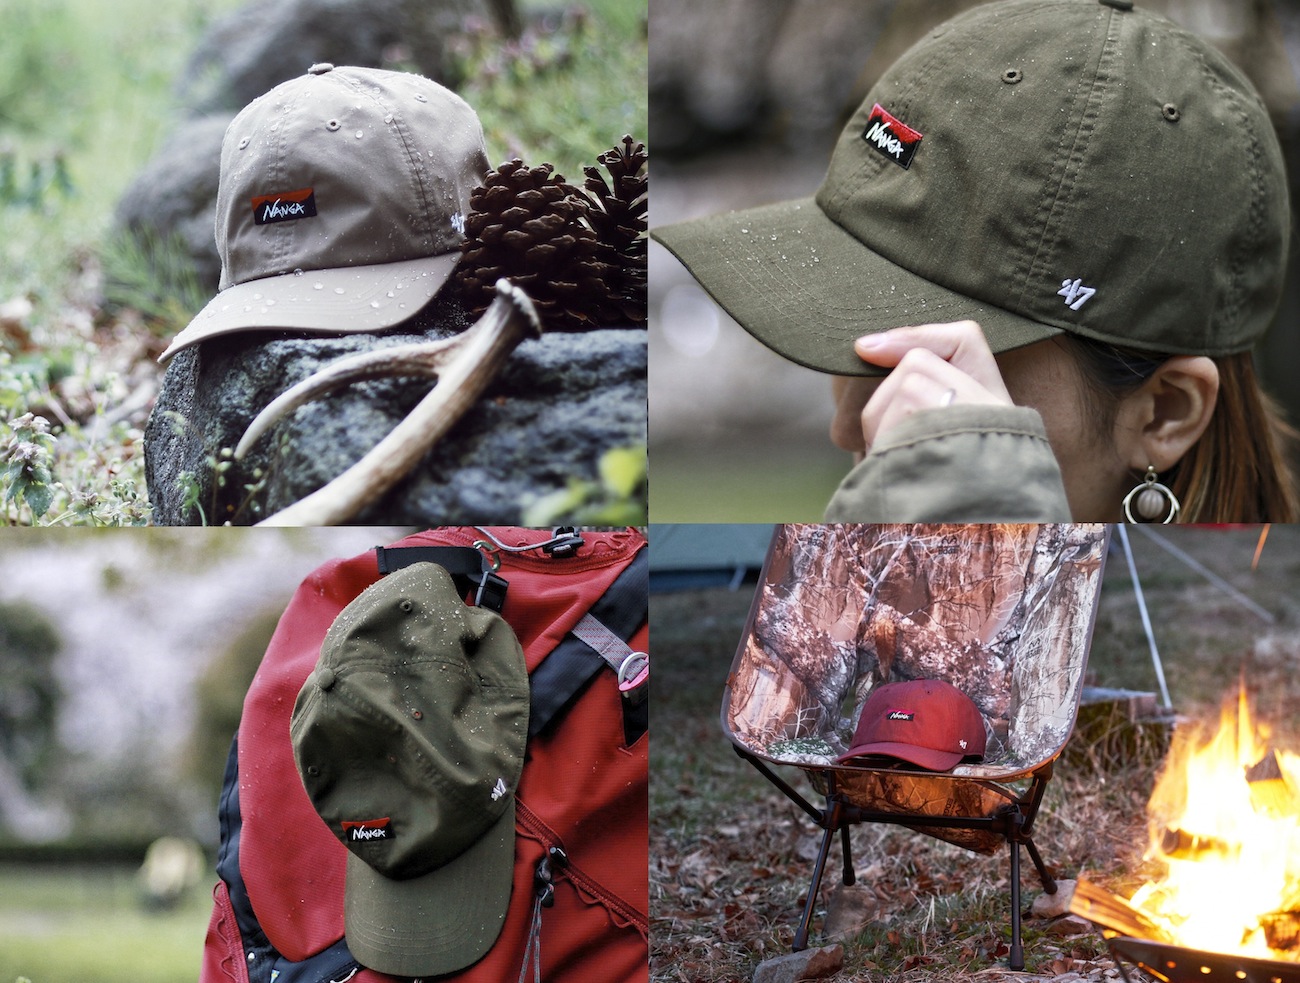 ナンガの焚火帽】NANGAX47のTAKIBI CAPは全天候の年間定番です。 アウトドアとキャンプの専門店:マウンテンプロダクツ